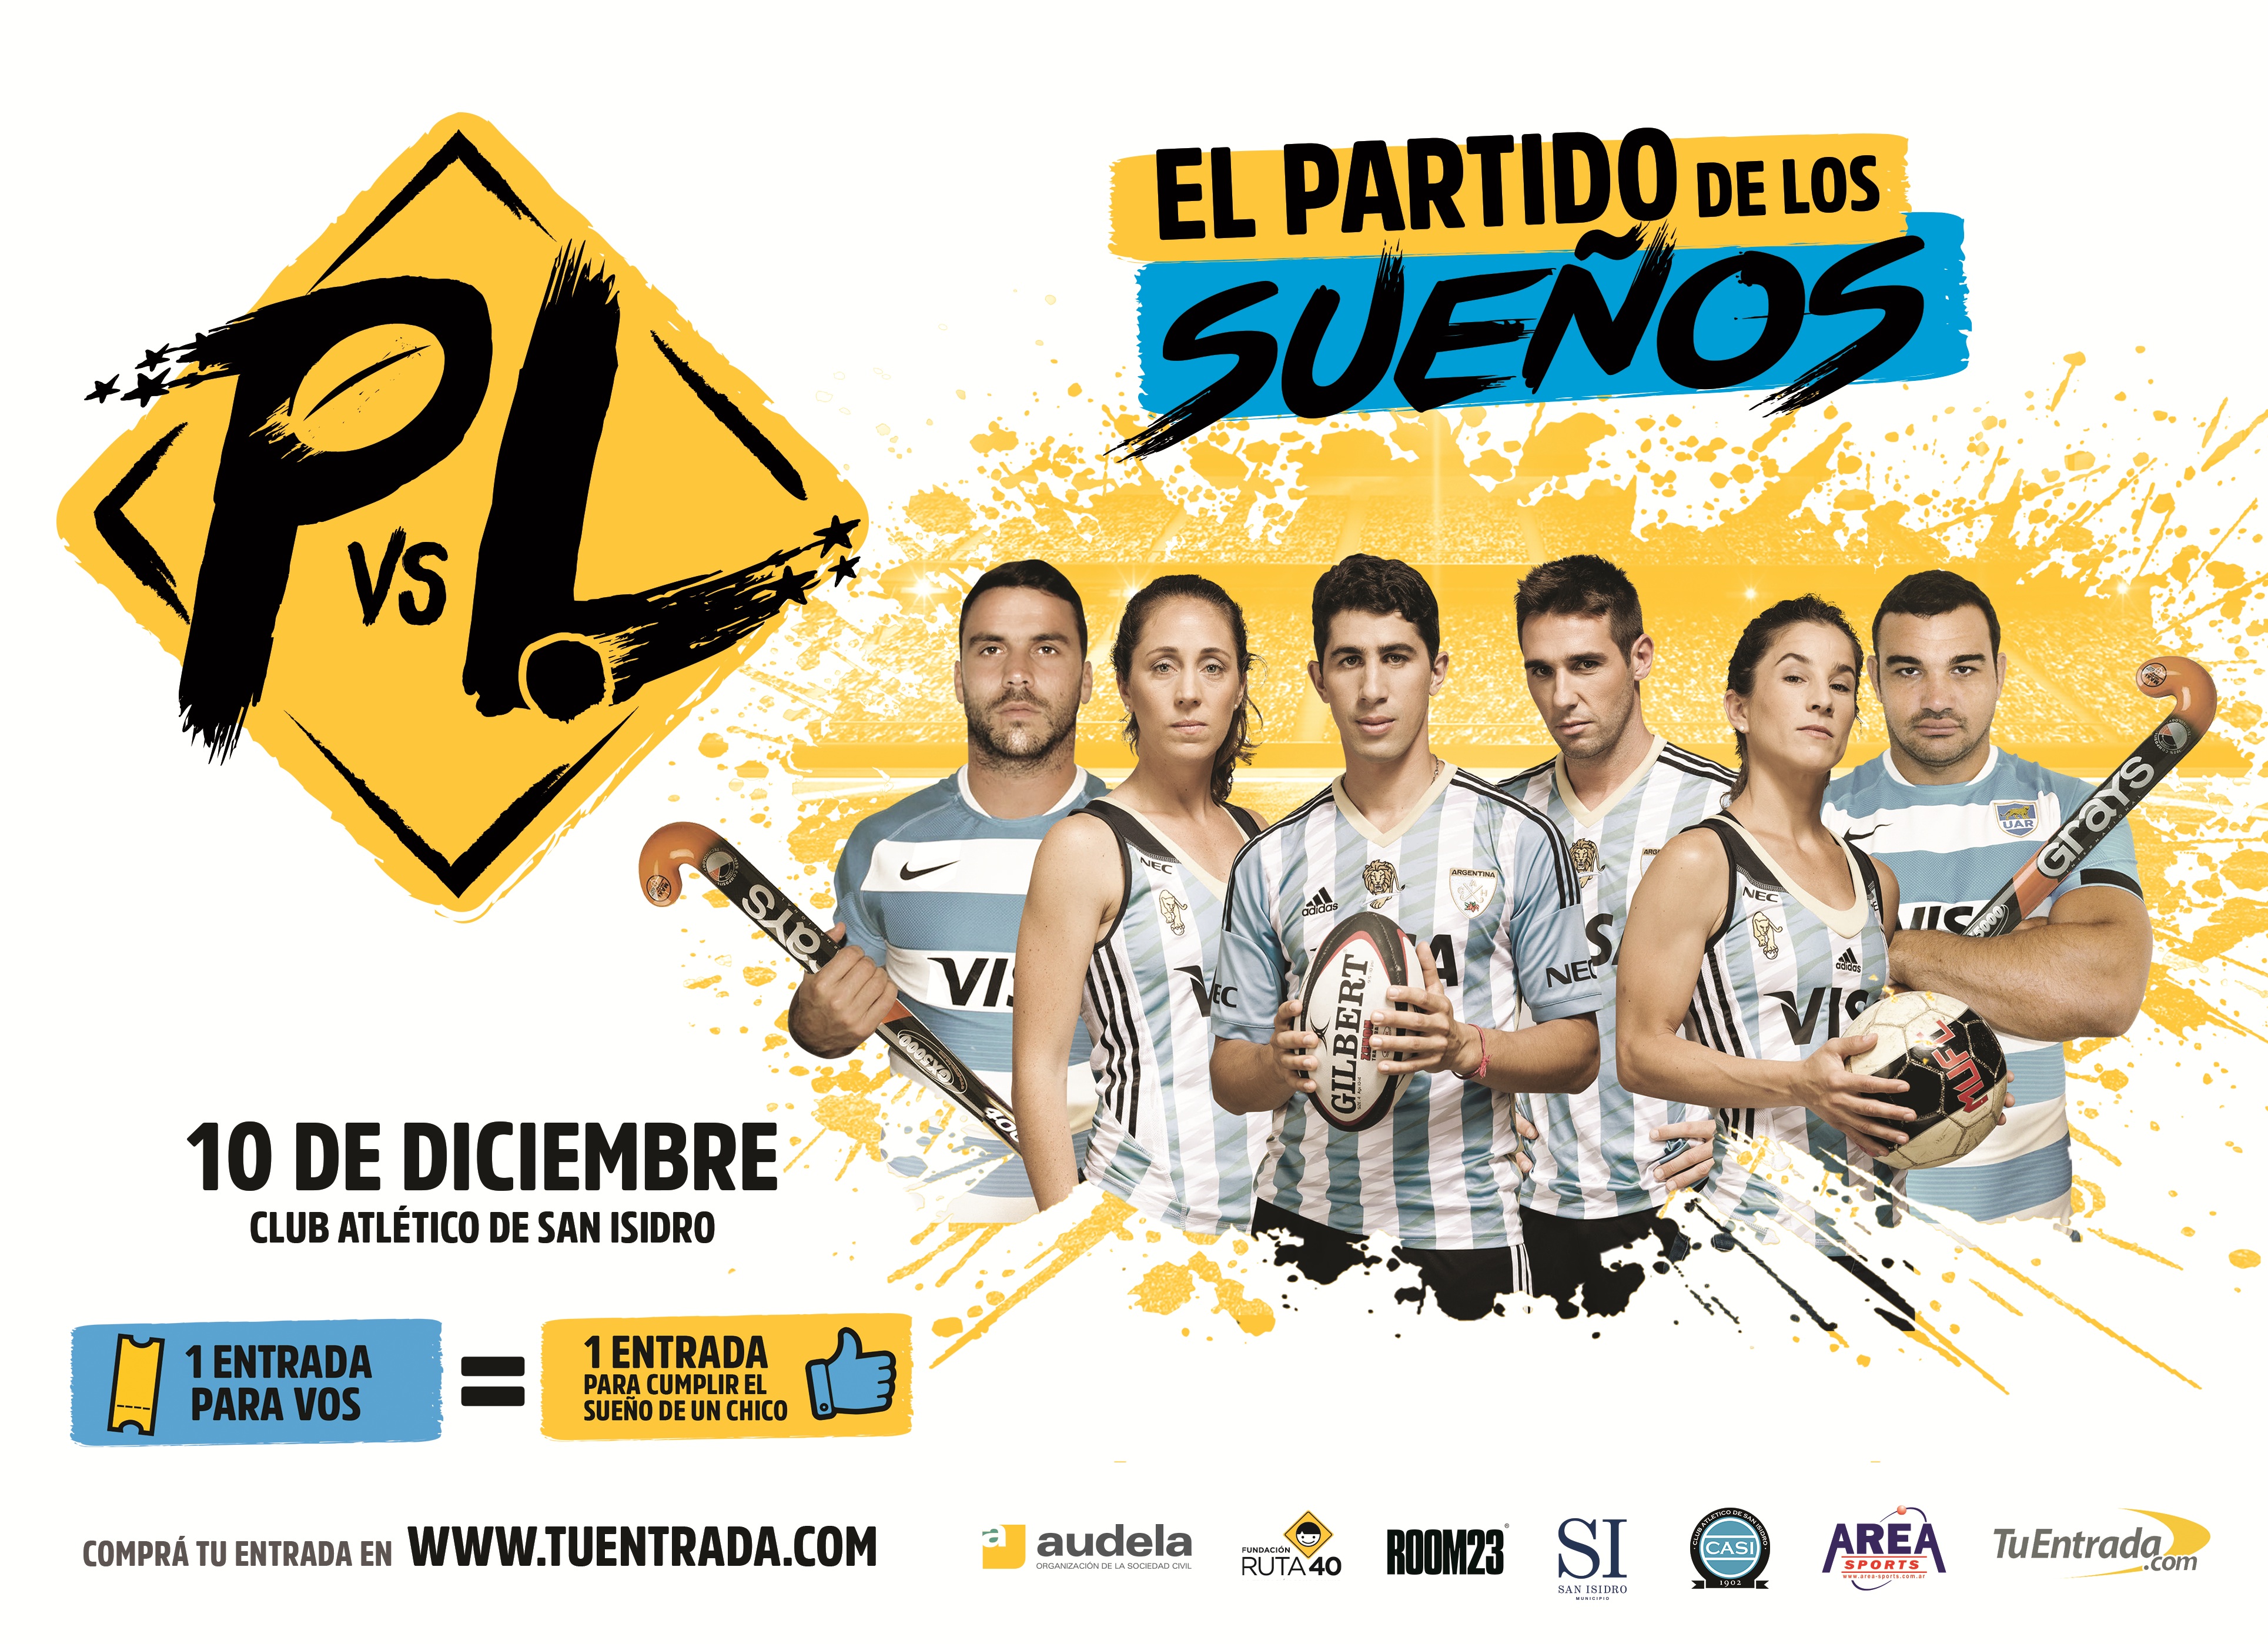 “Pumas vs Leonas; el partido de los sueños” 8° edición